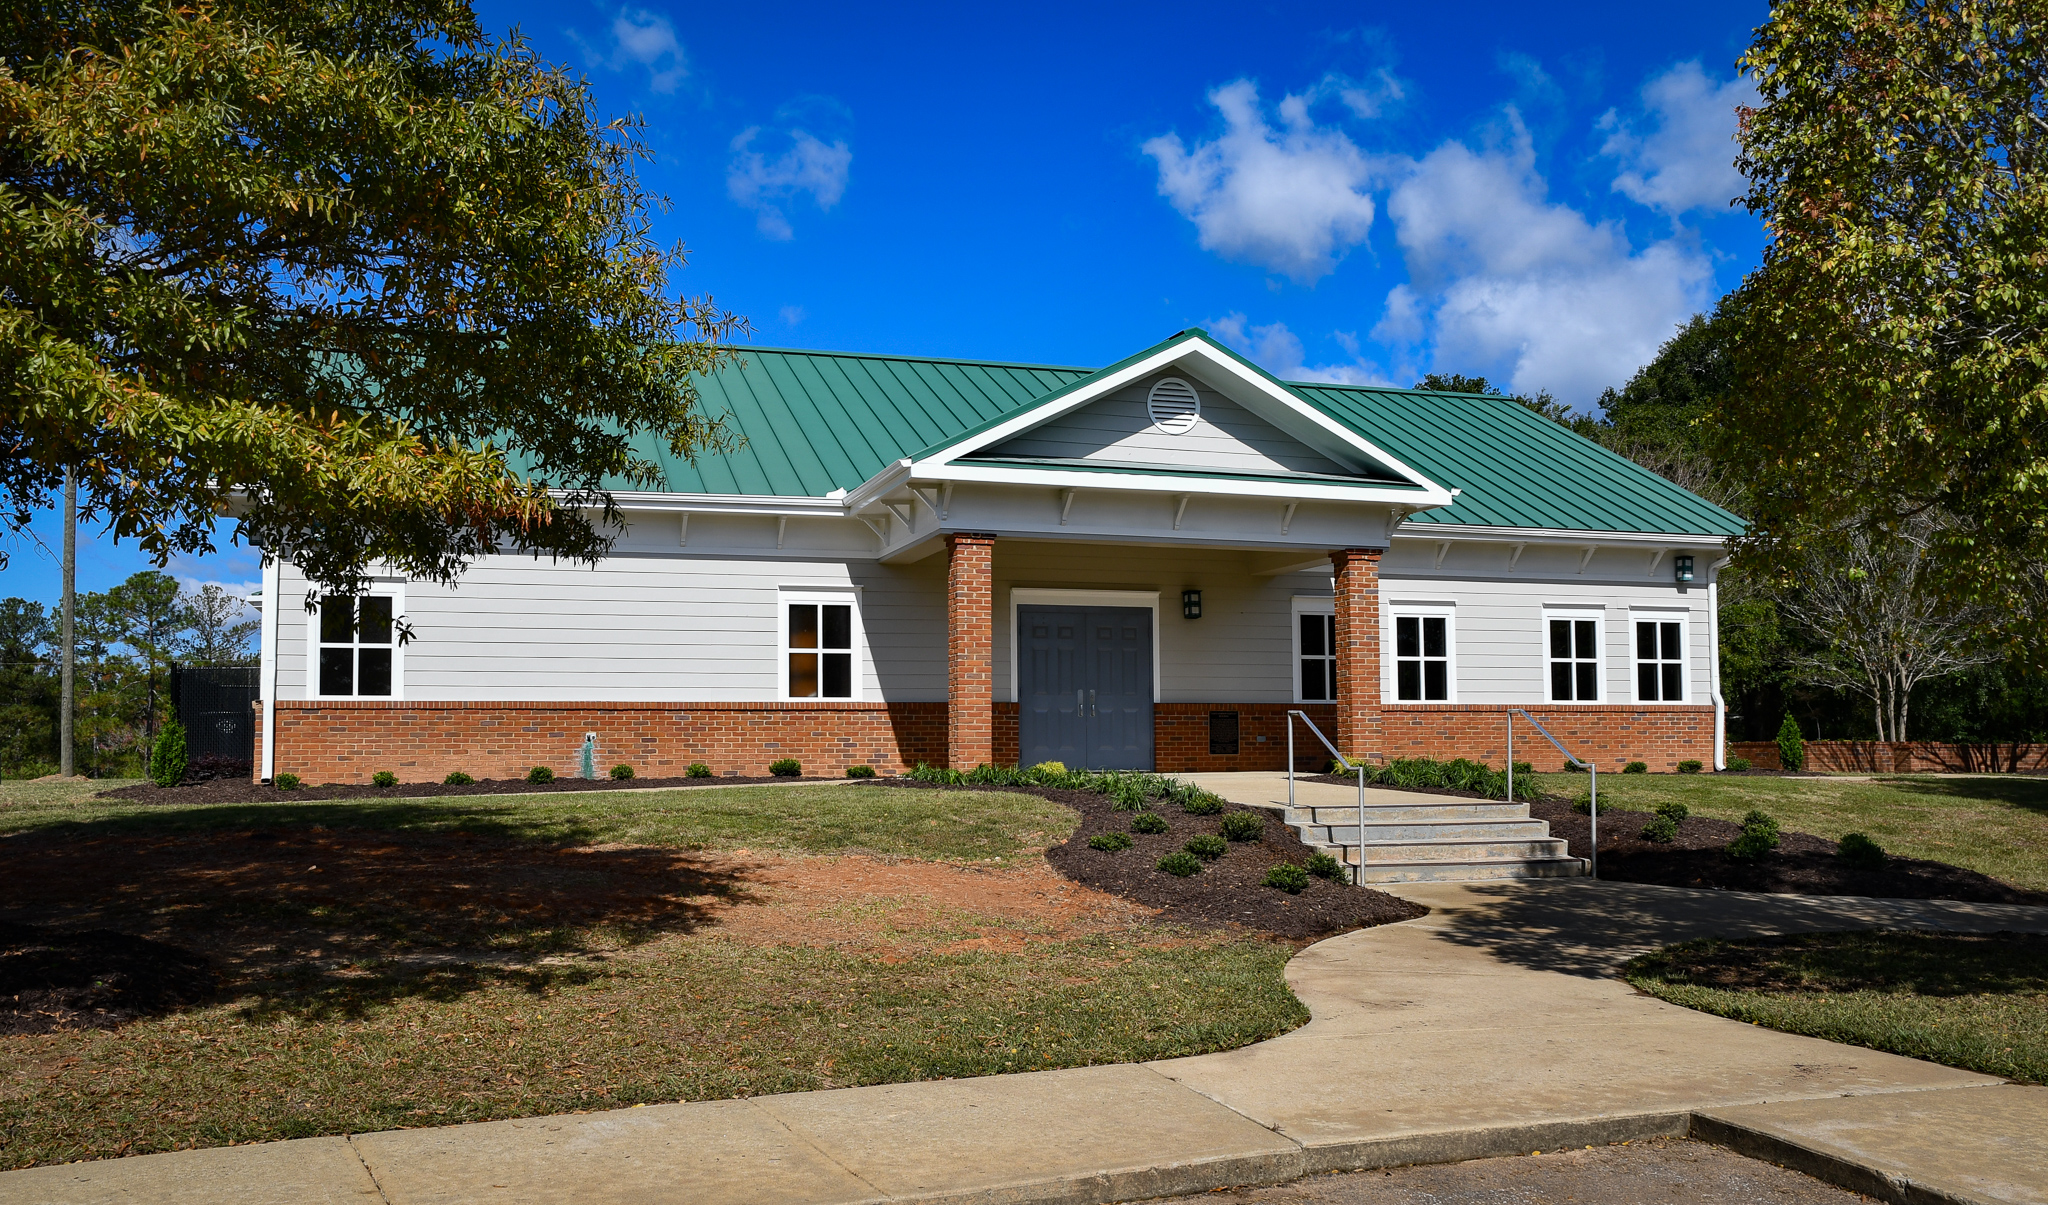 Wayne Bartley Community Center at Gray Hill